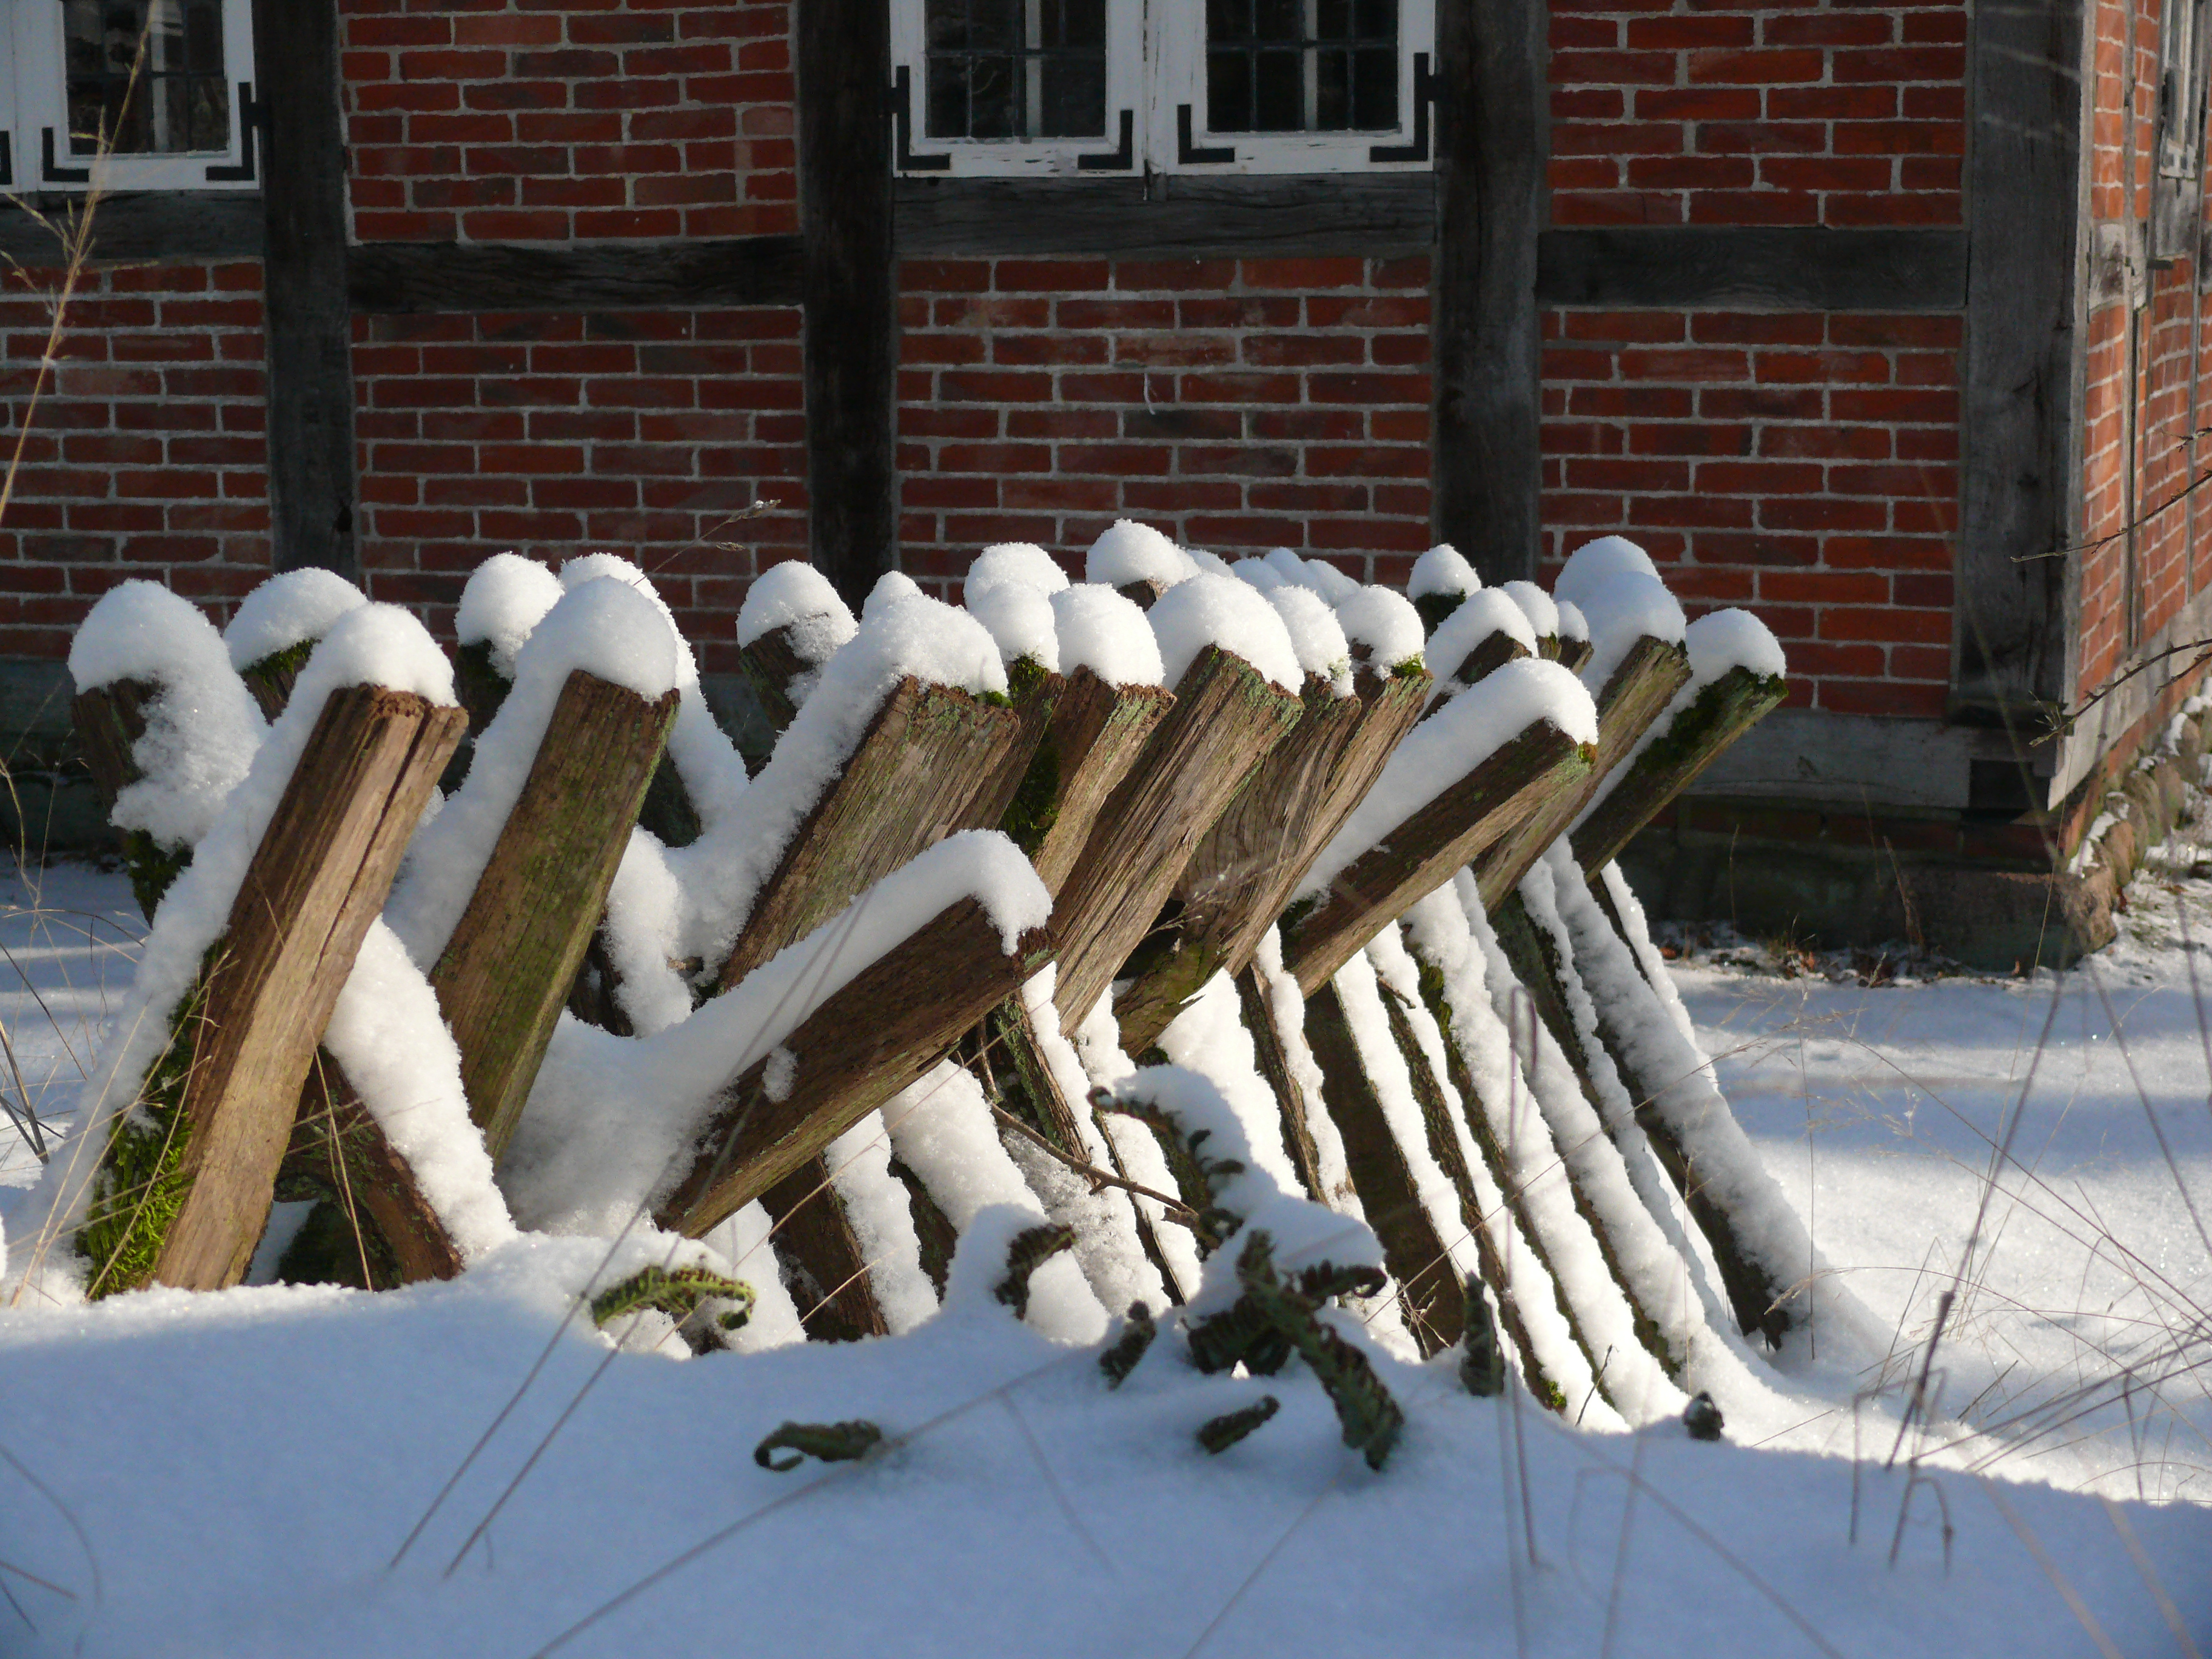 Winter: Eekenboltentun (Eichenbohlenzaun) im Schnee | Foto: VNP Stiftung Naturschutzpark Lüneburger Heide